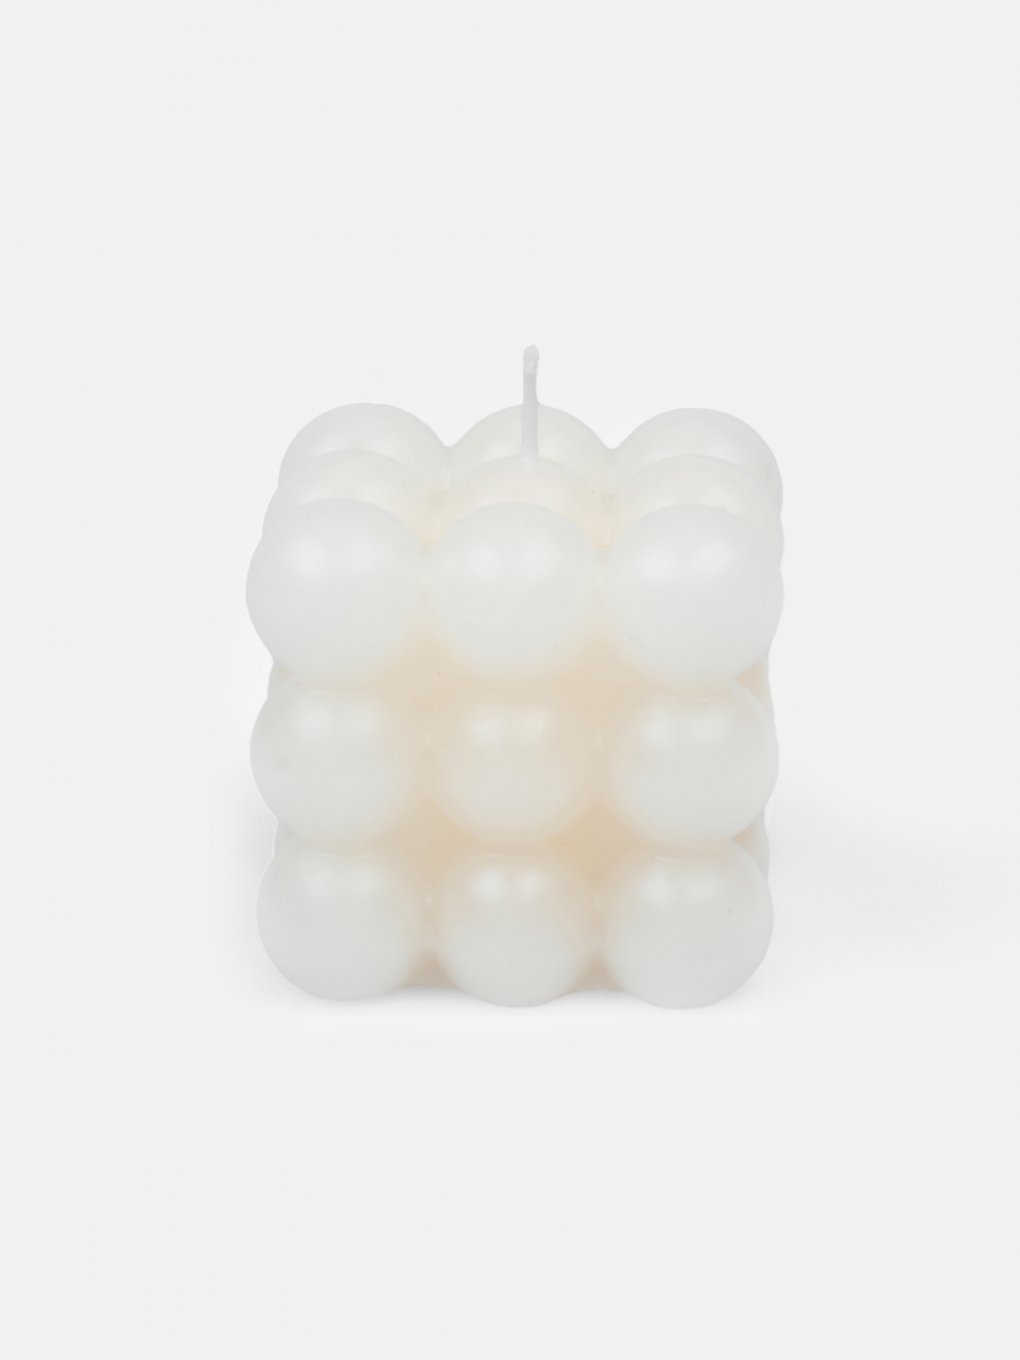 Čtvercová svíčka s designem bublinek